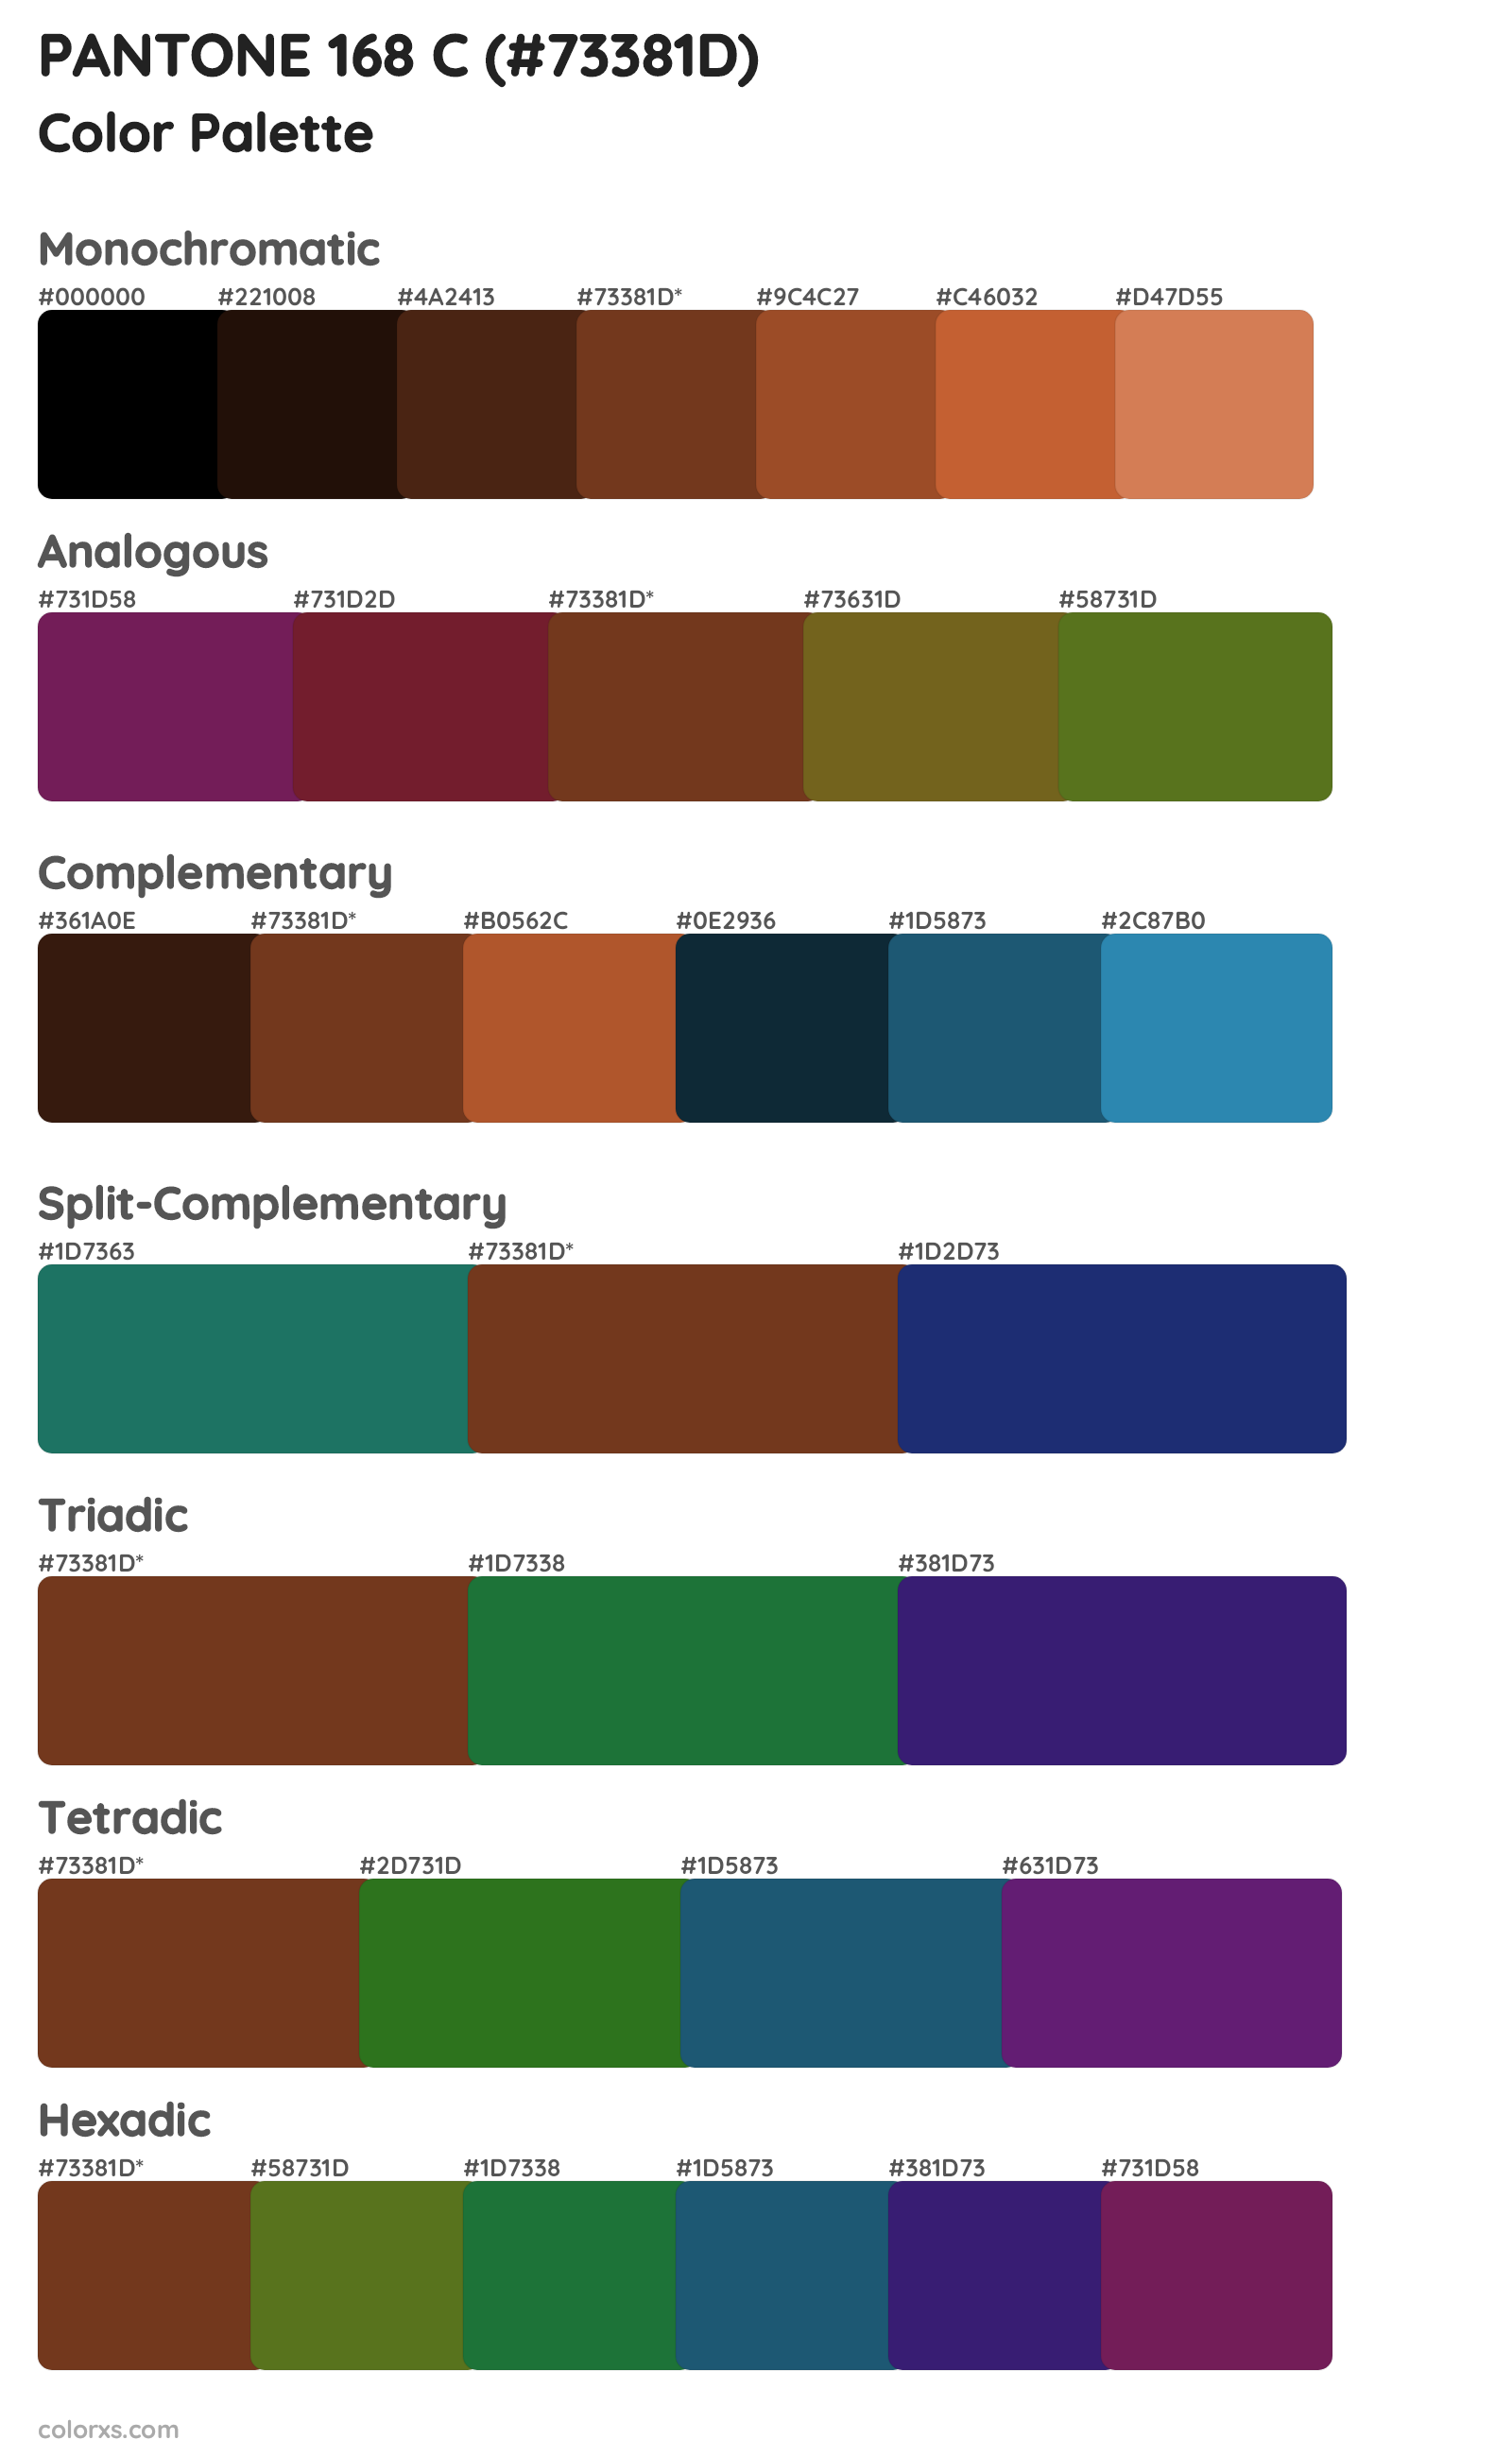 PANTONE 168 C Color Scheme Palettes